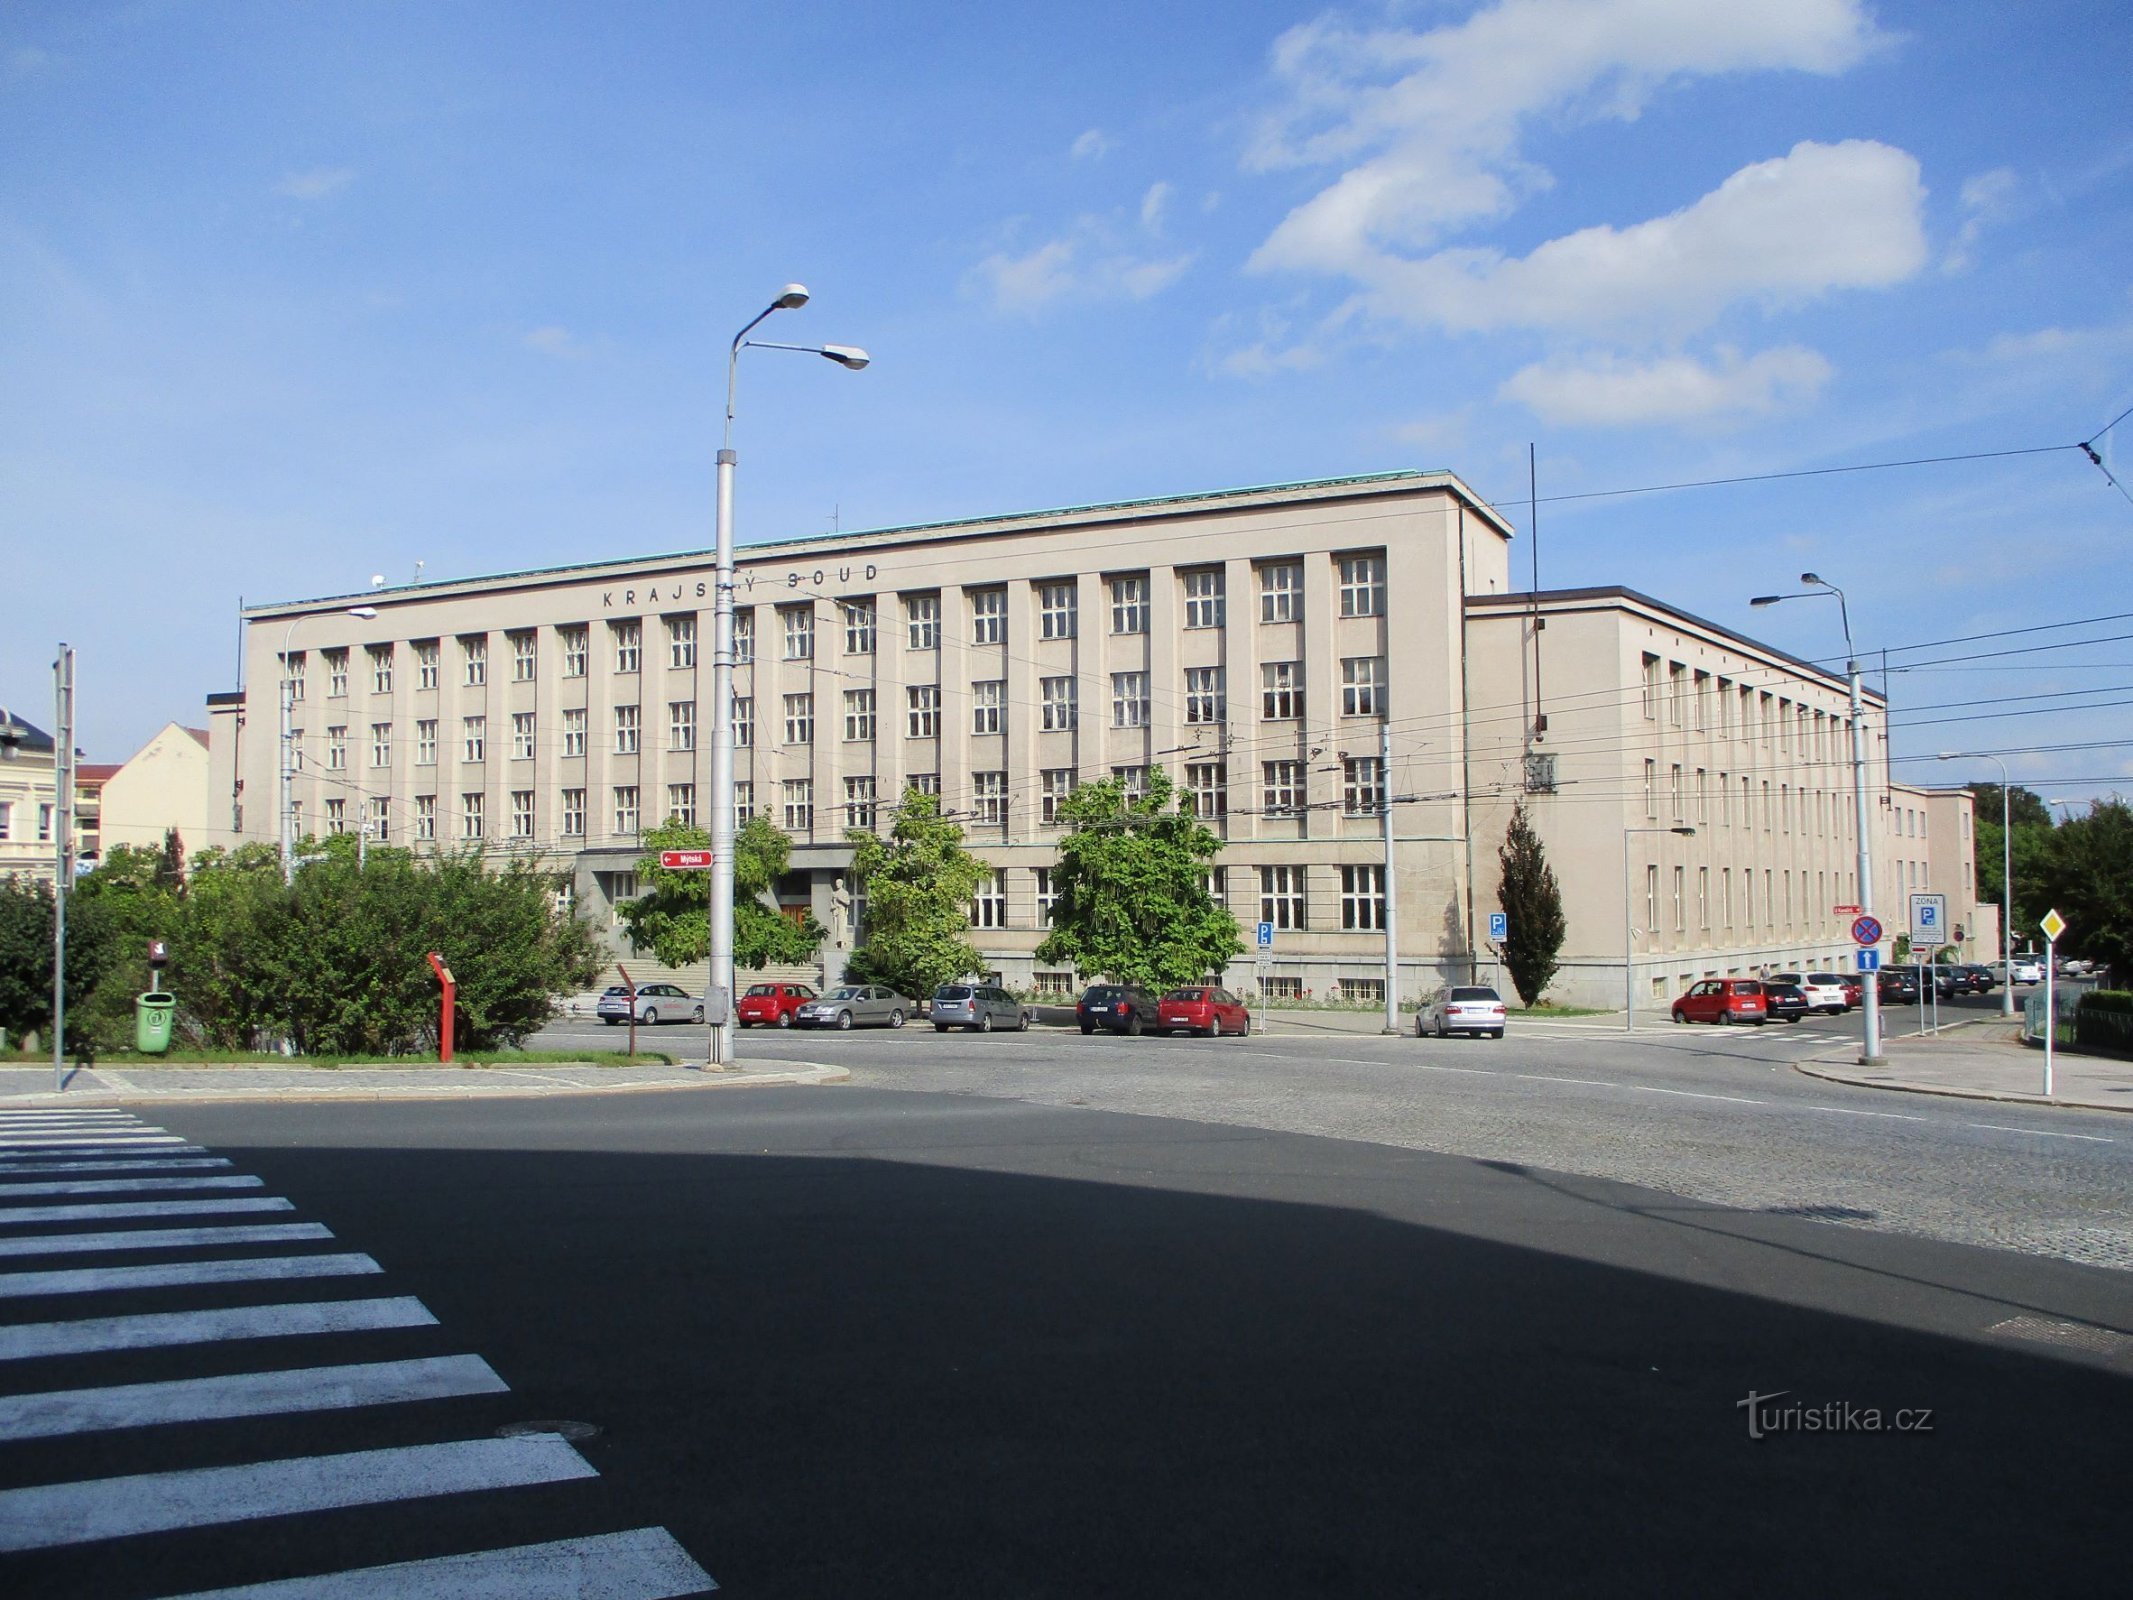 Регіональний суд (Градец Кралове, 15.9.2019)